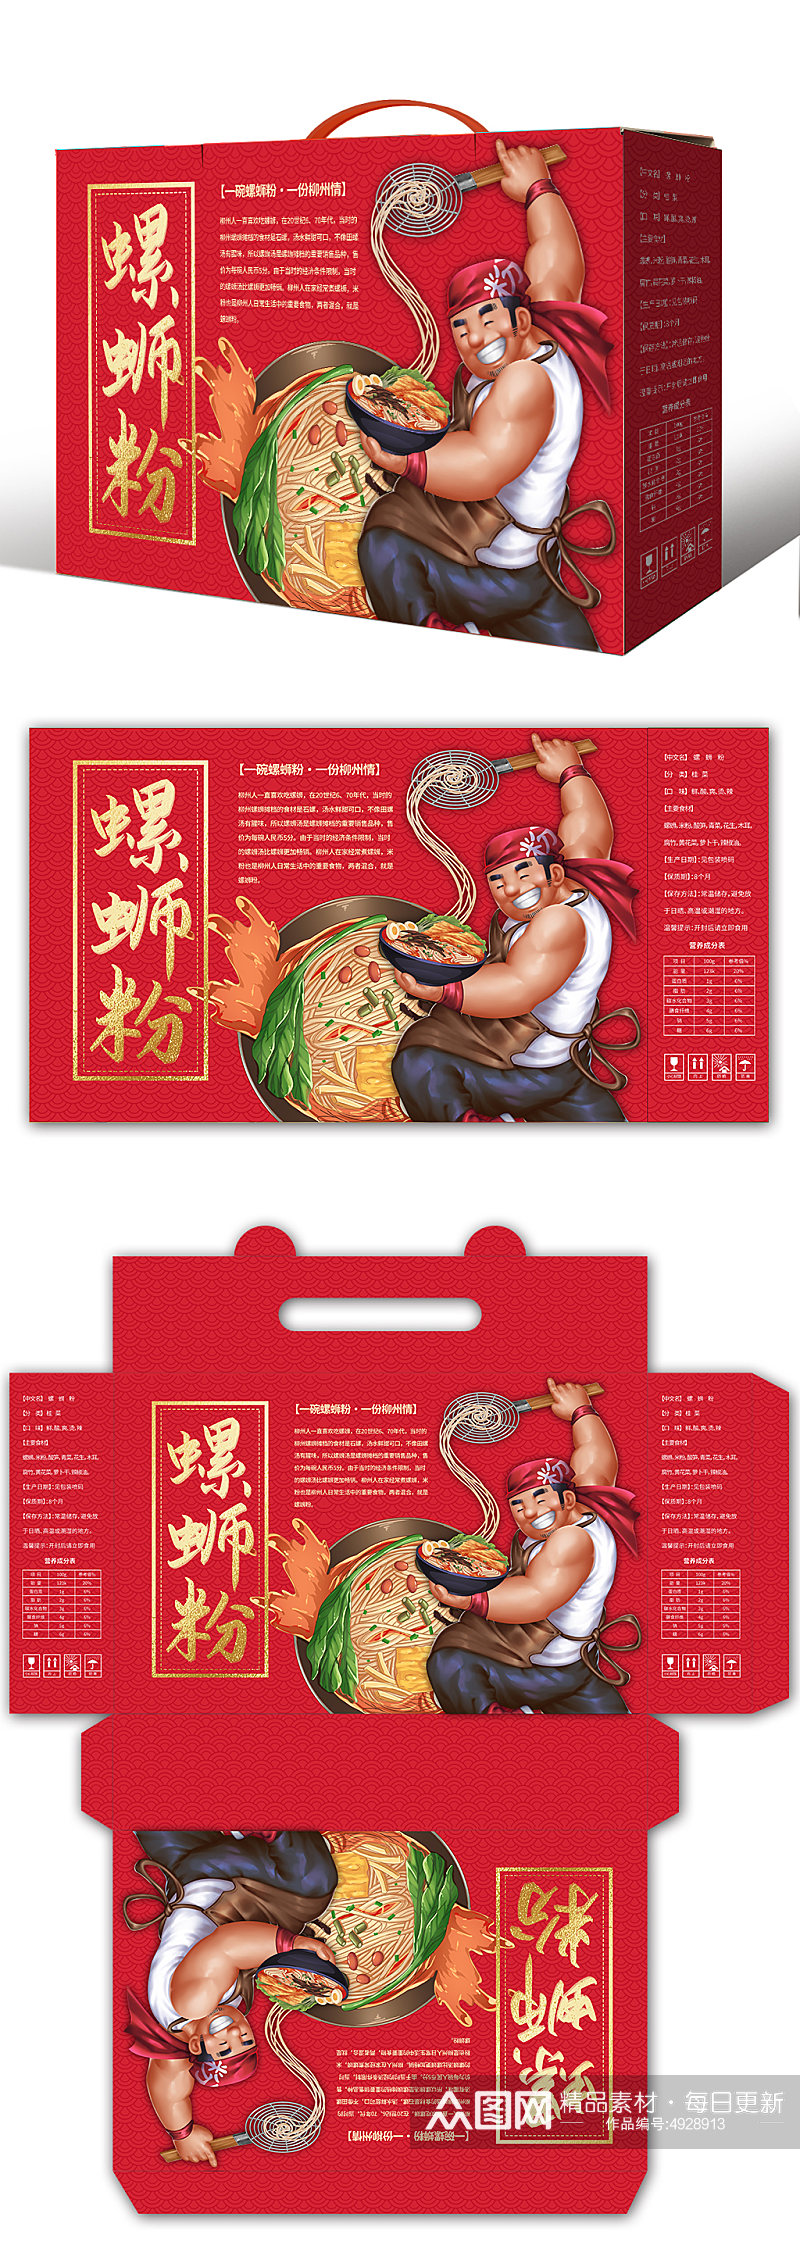 卡通柳州螺蛳粉米粉美食手提袋礼盒包装设计素材